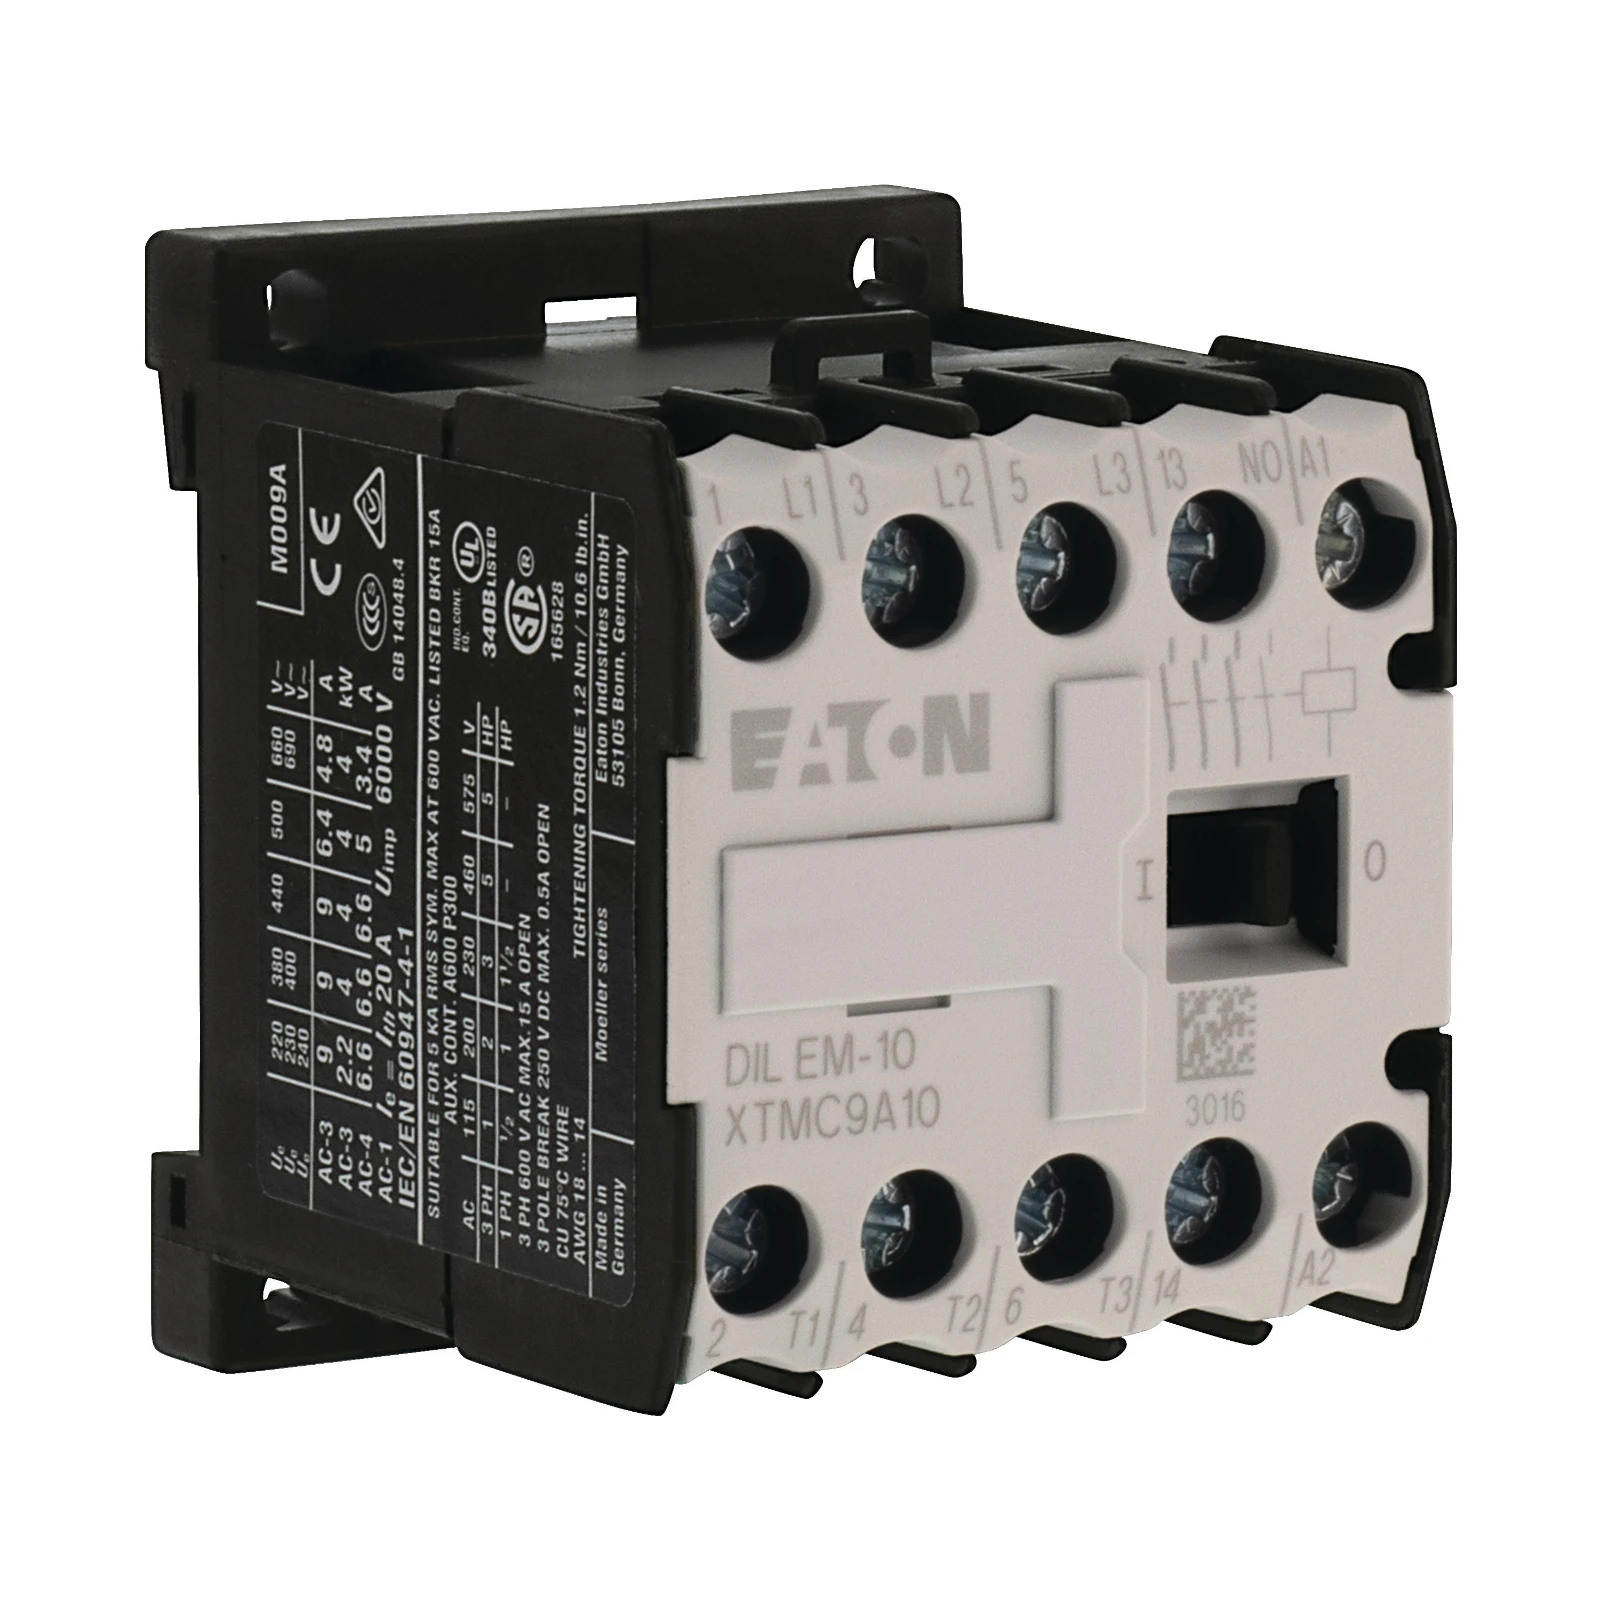 2062098 - Eaton DILEM-10-G(12VDC)